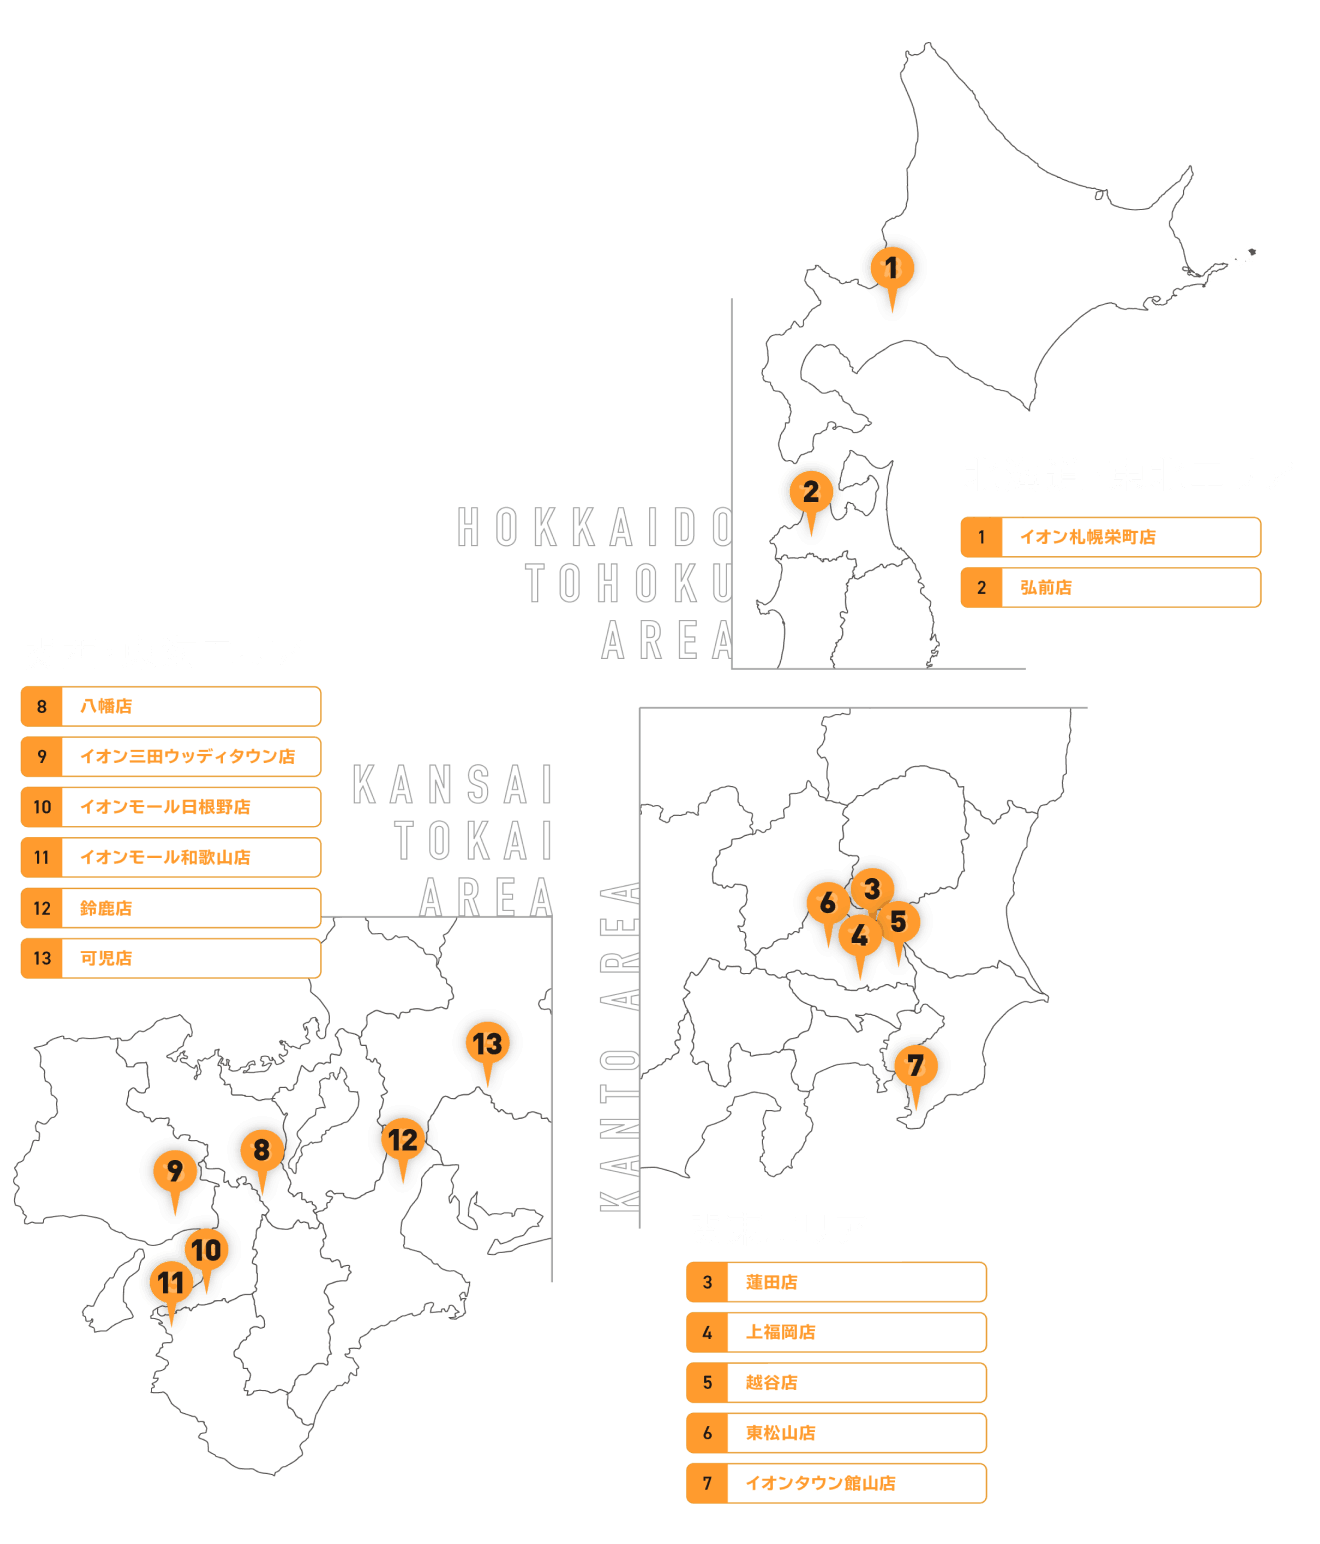 日本地図に示された店舗一覧